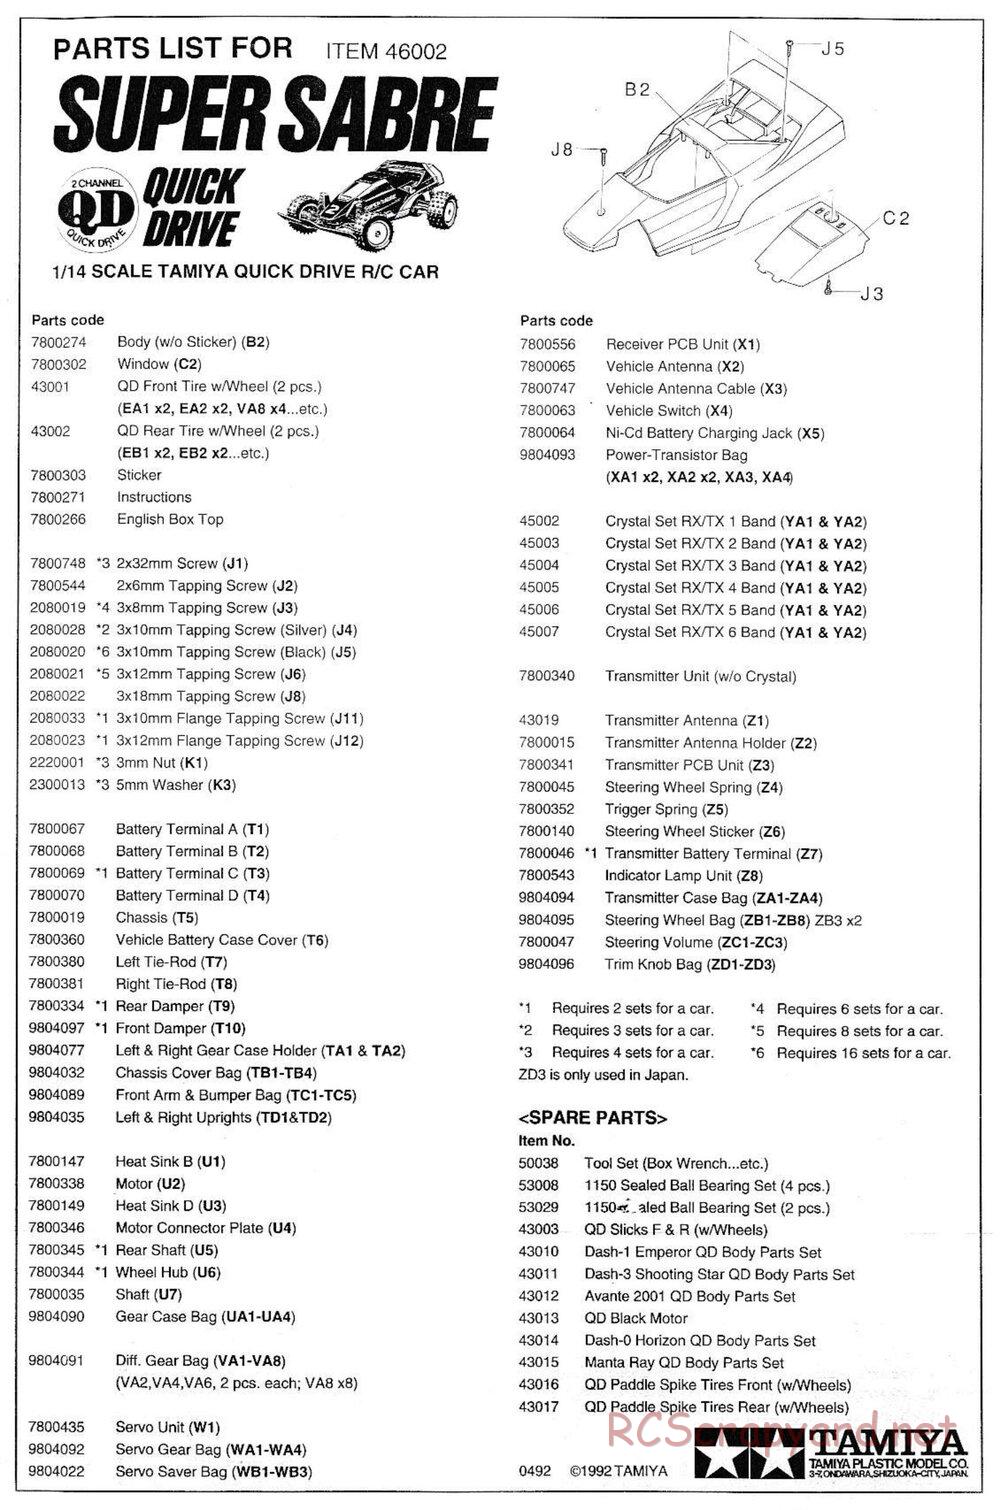 Tamiya - Super Sabre QD Chassis - Manual - Page 13